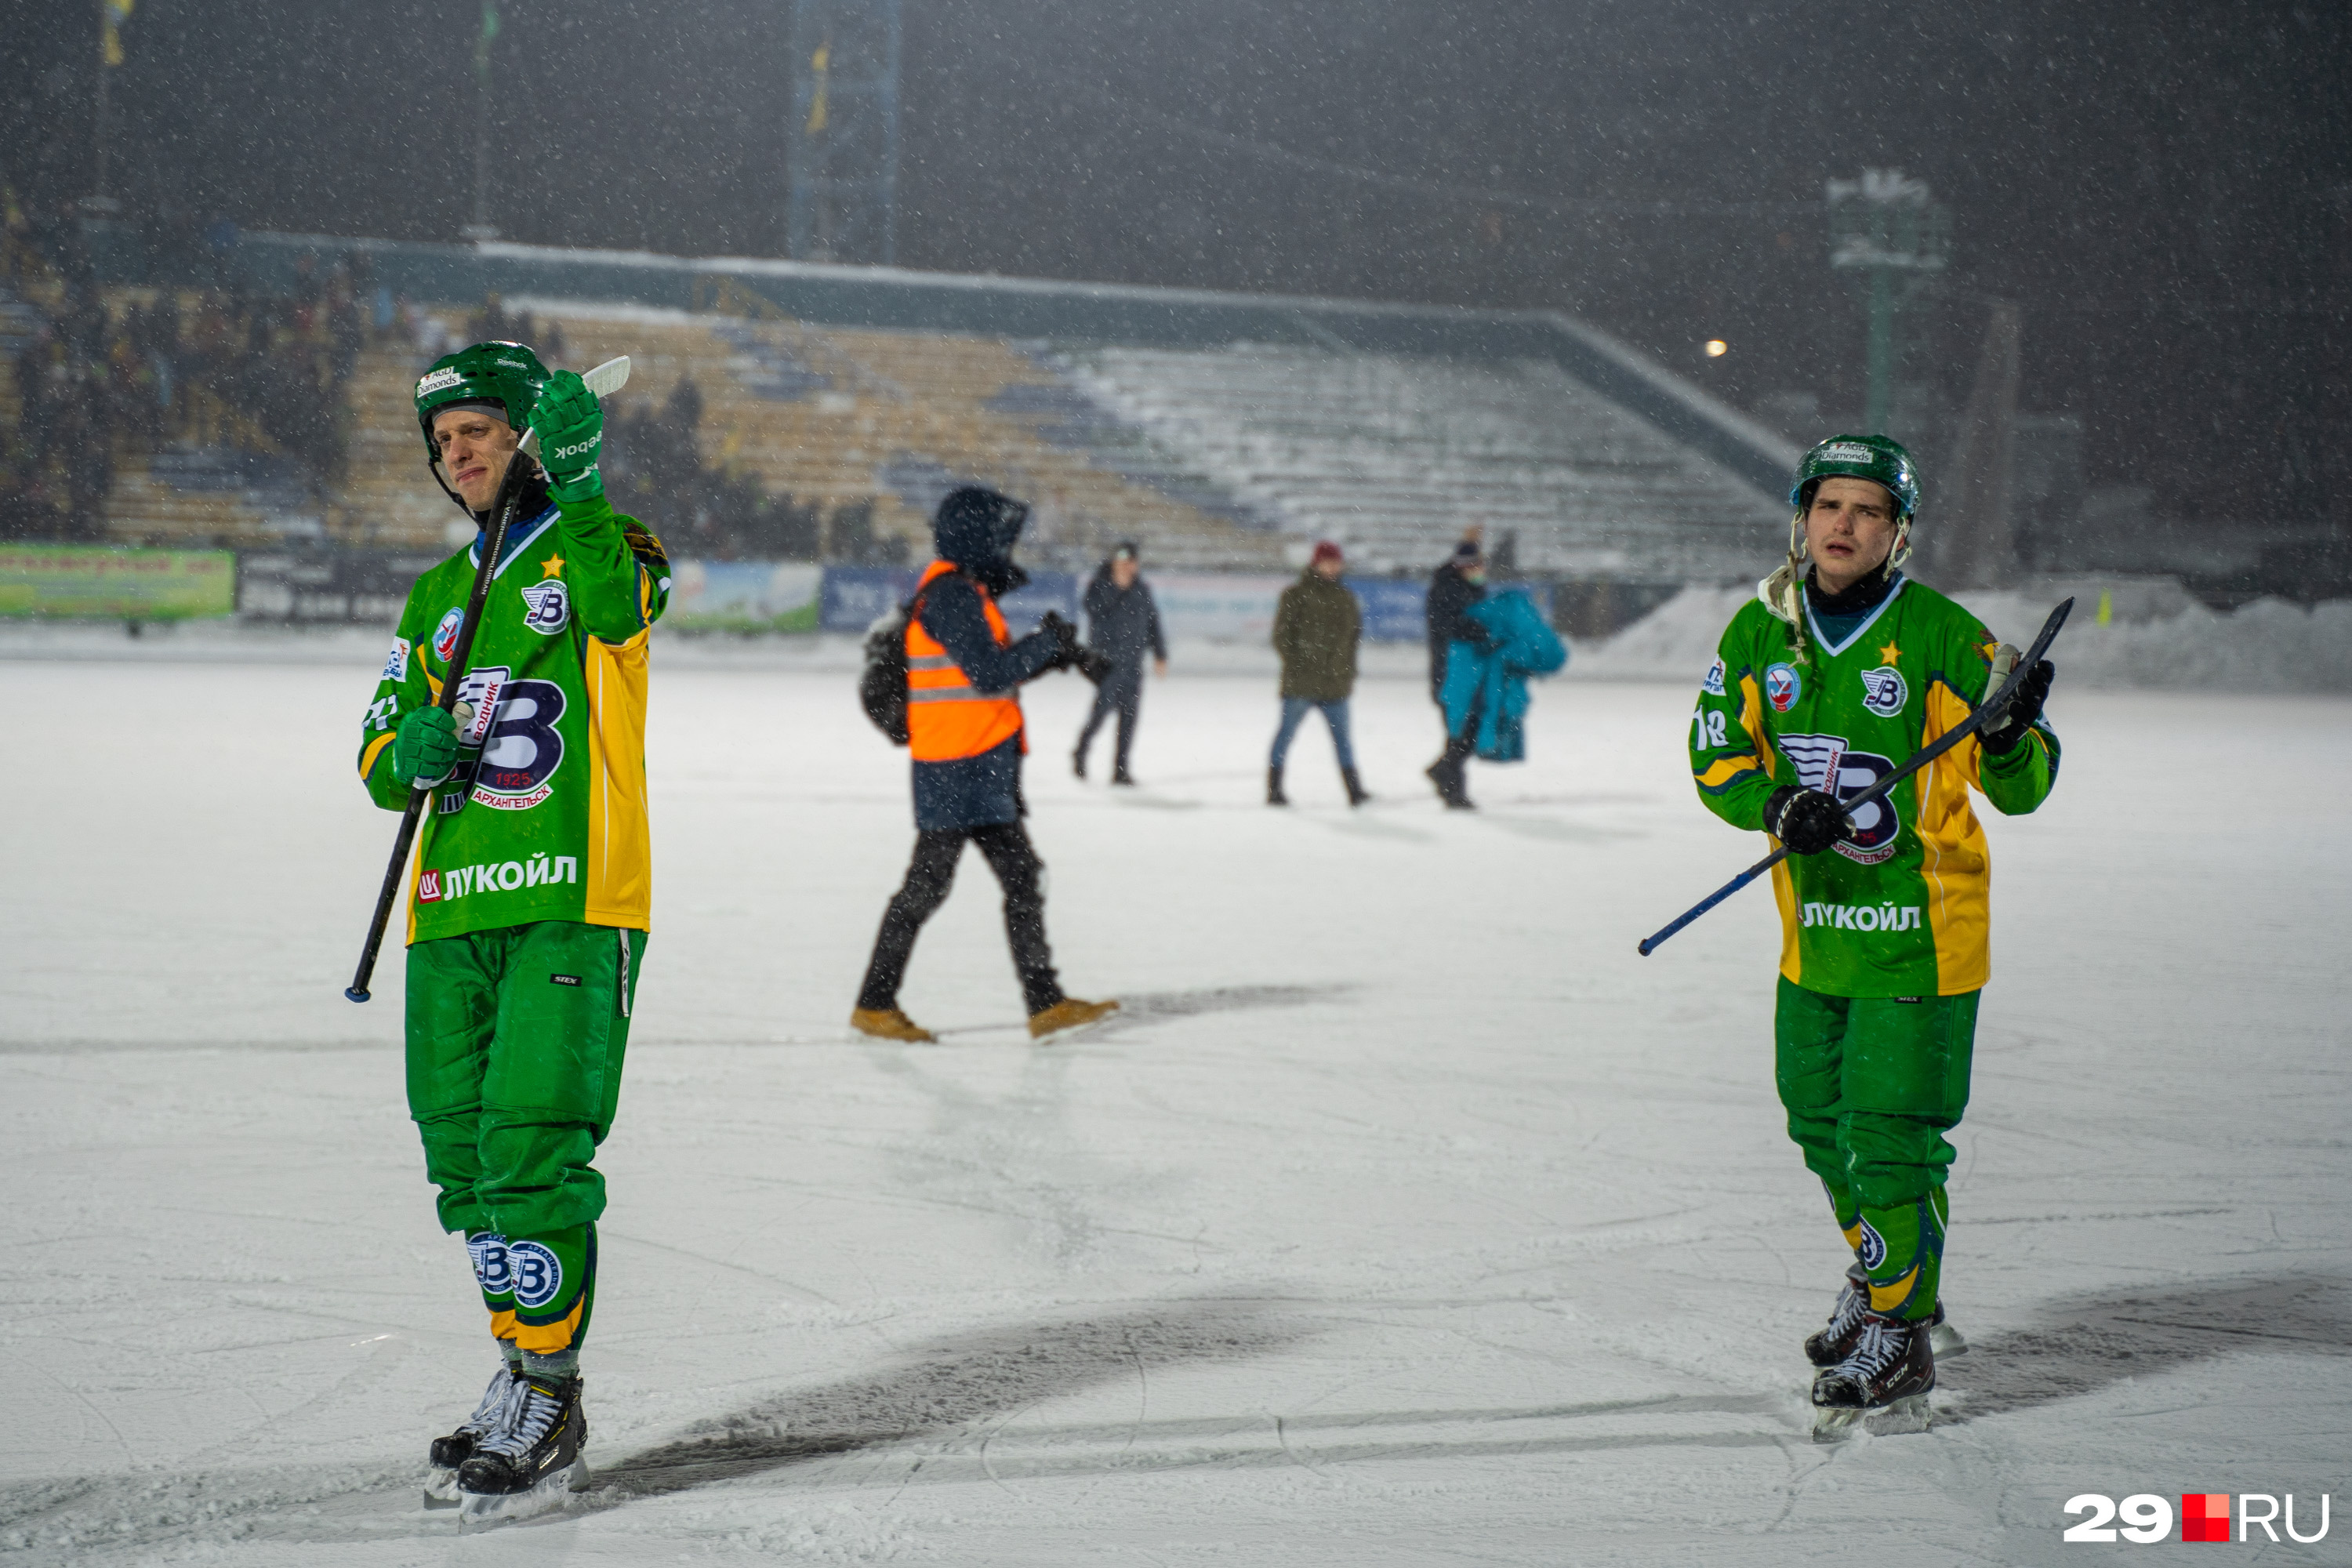 Сбавлять темп нашим спортсменам нельзя — сегодня они направились на очередную игру в Ульяновск